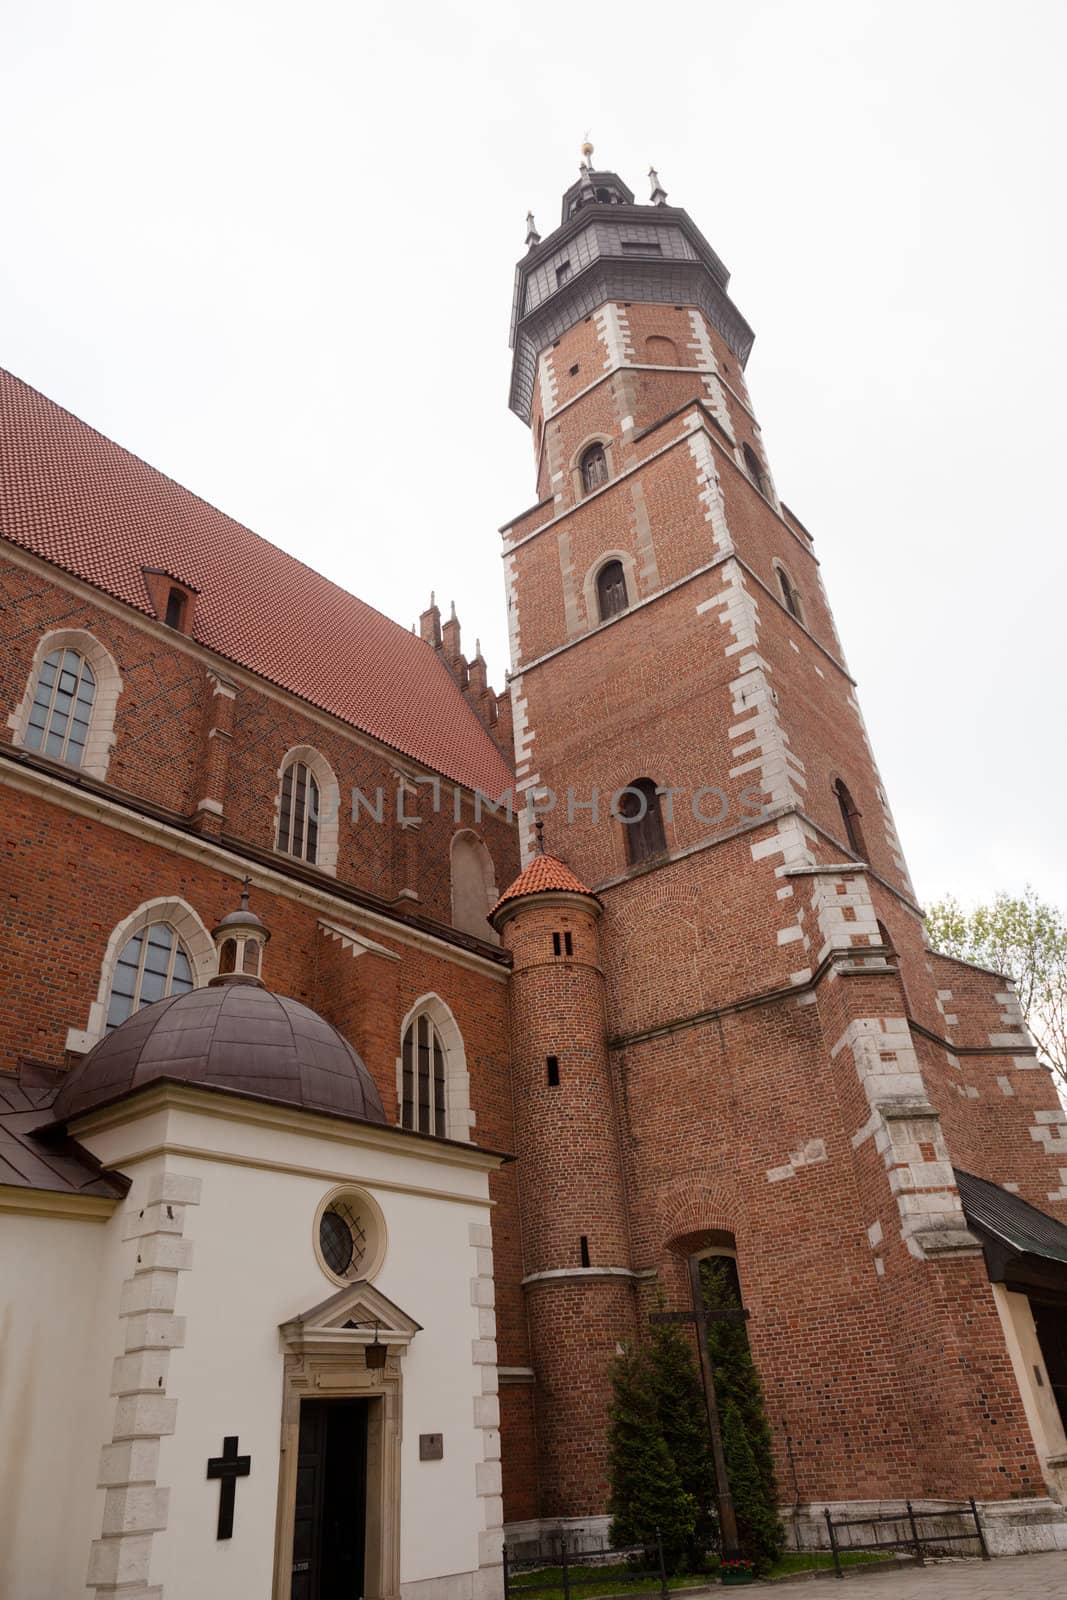 Basilica of the Body and Blood of Christ
Kraków-Kazimierz